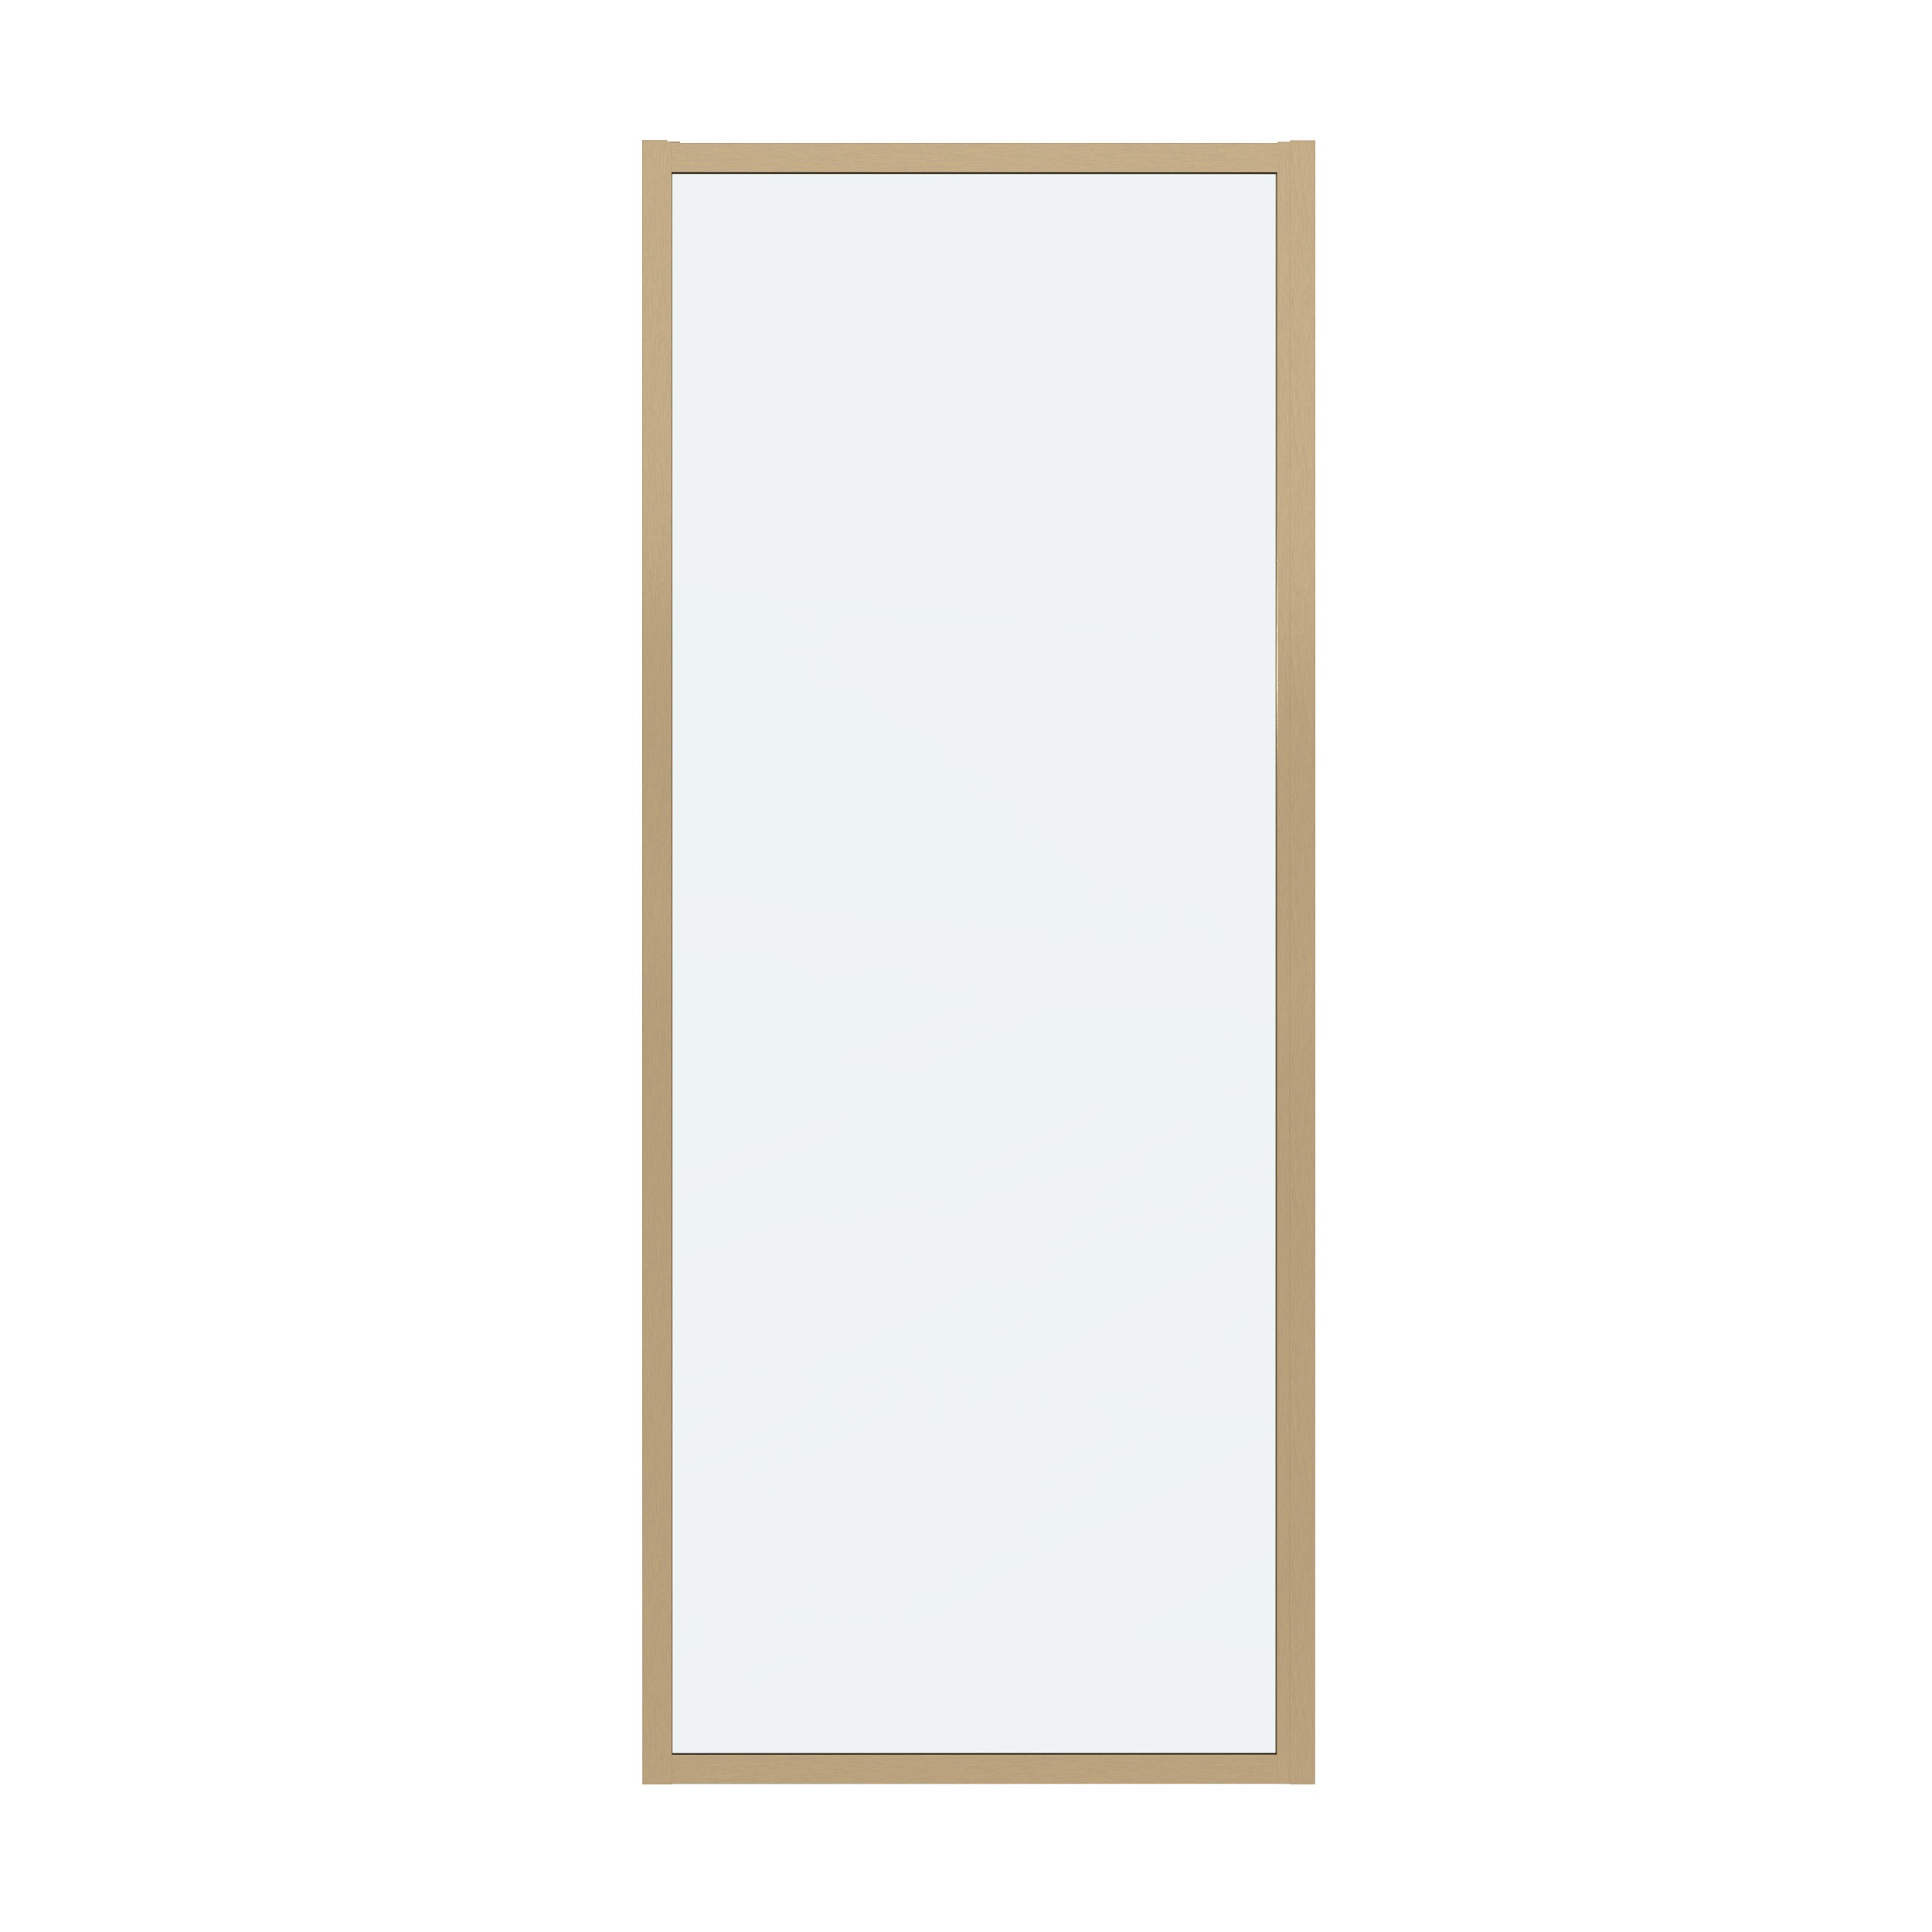 Боковая стенка Grossman Cosmo 90x195 200.K33.02.90.32.00 стекло прозрачное, профиль золото